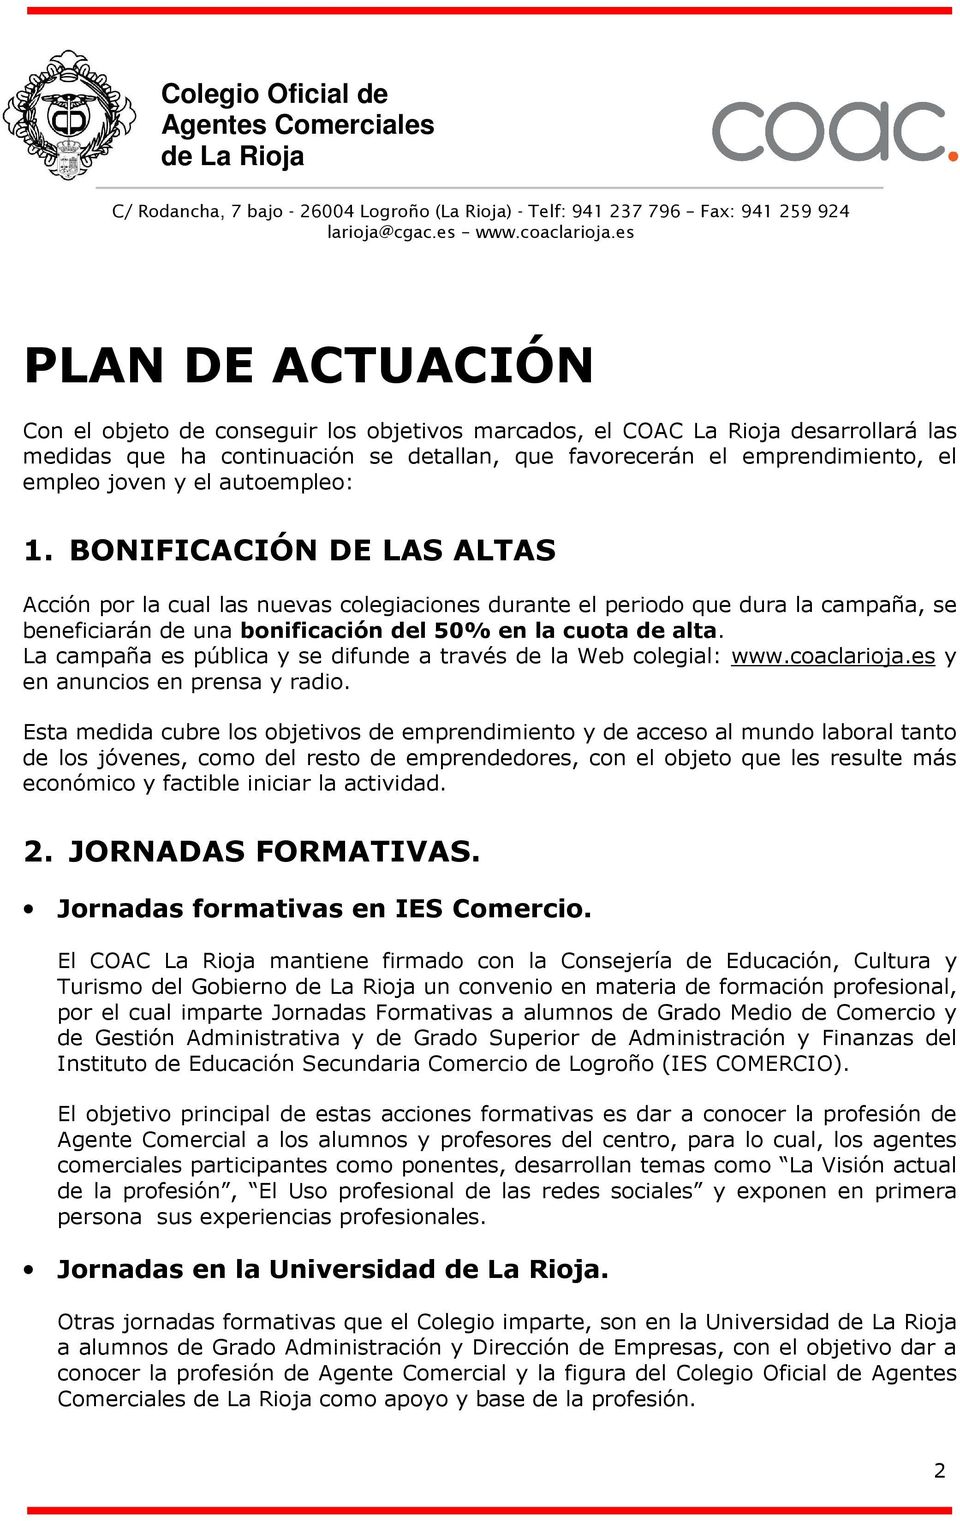 La campaña es pública y se difunde a través de la Web colegial: www.coaclarioja.es y en anuncios en prensa y radio.